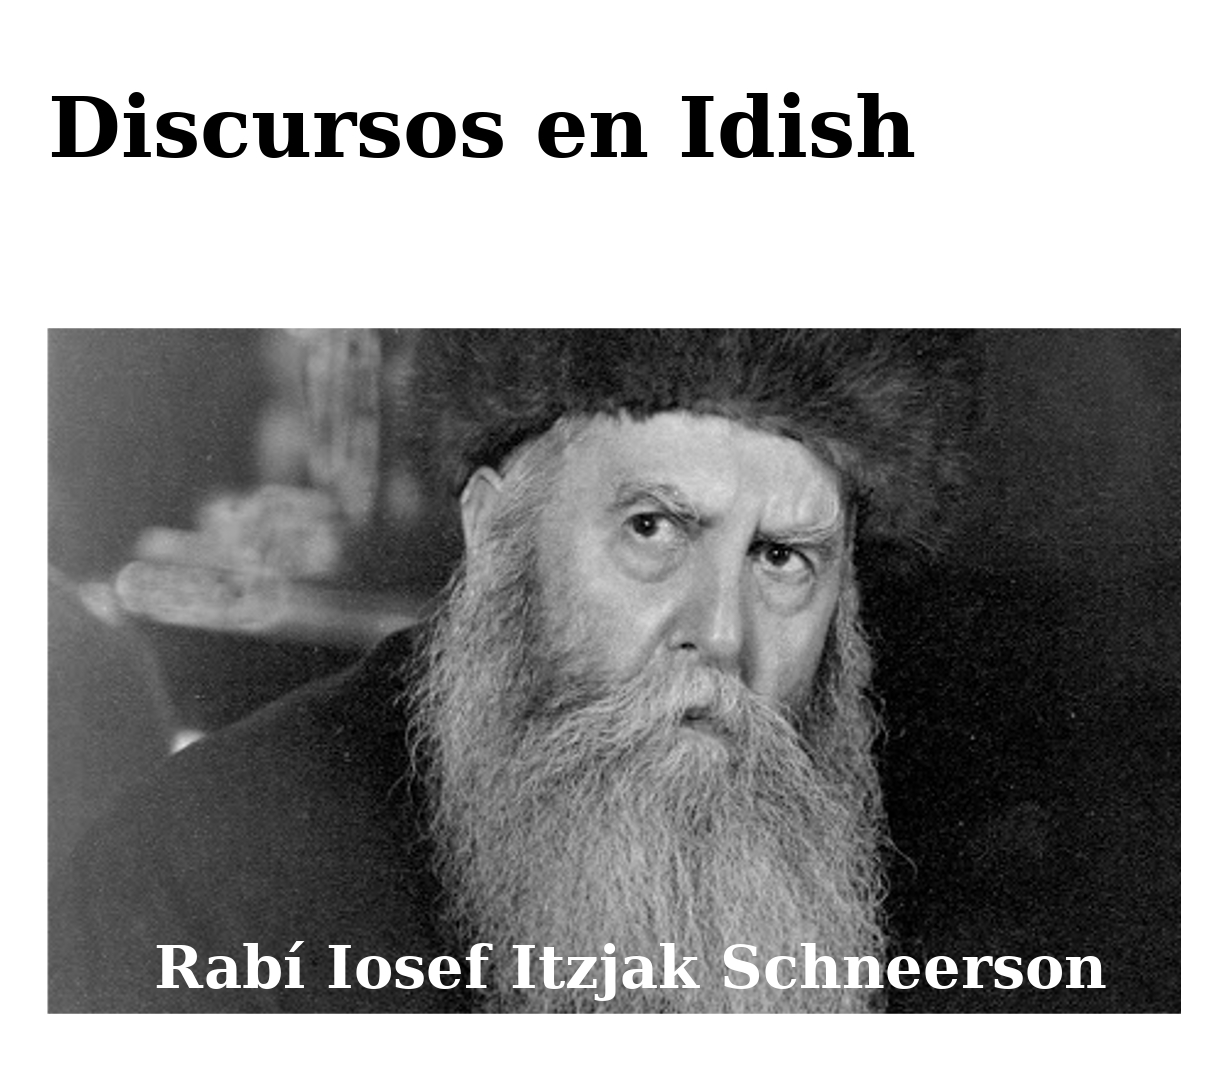 Discursos en Idish